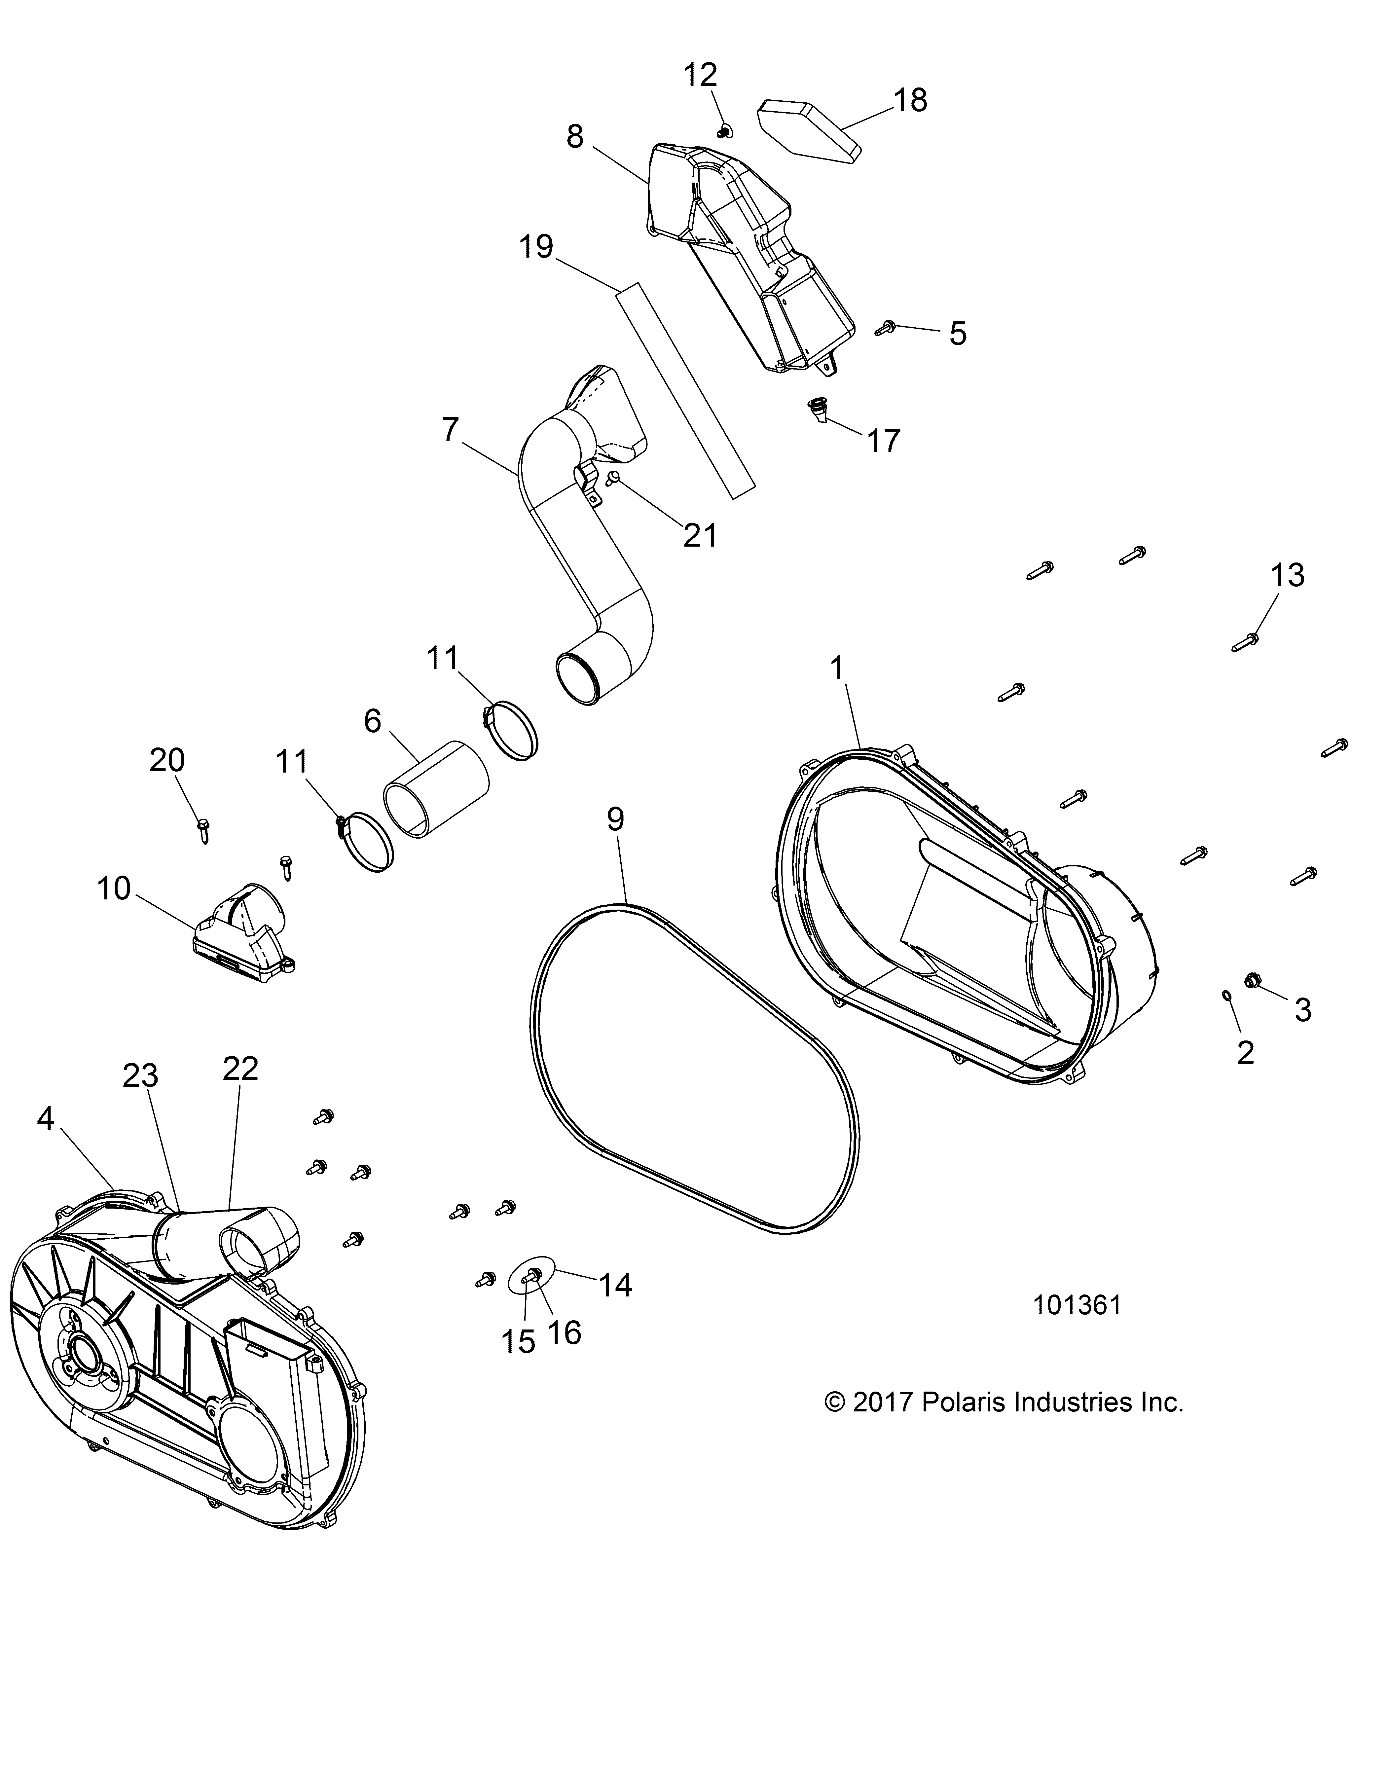 Foto diagrama Polaris que contem a peça 5414472